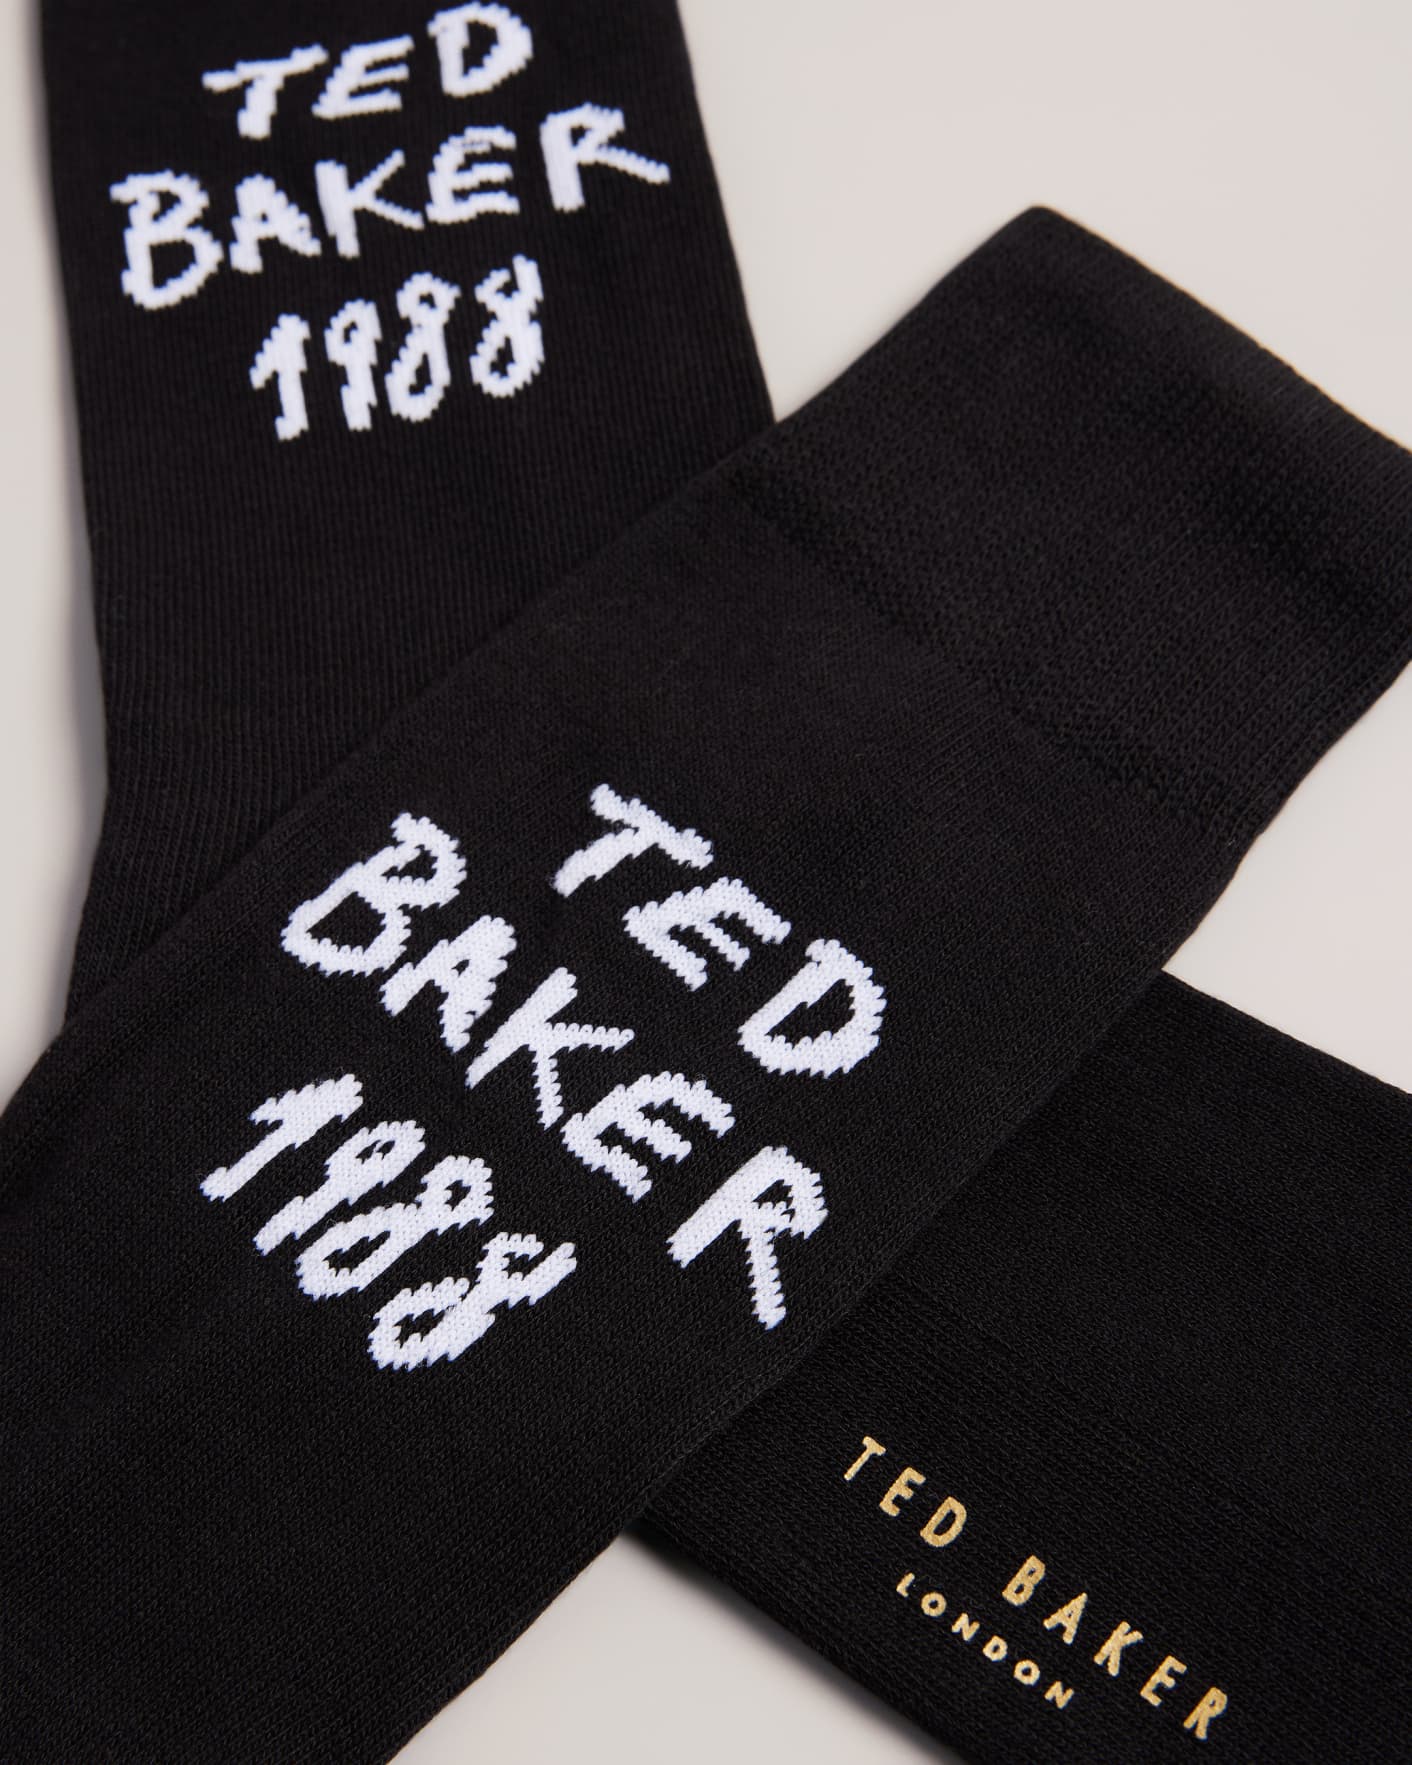 Black Branded Sports Socks Ted Baker